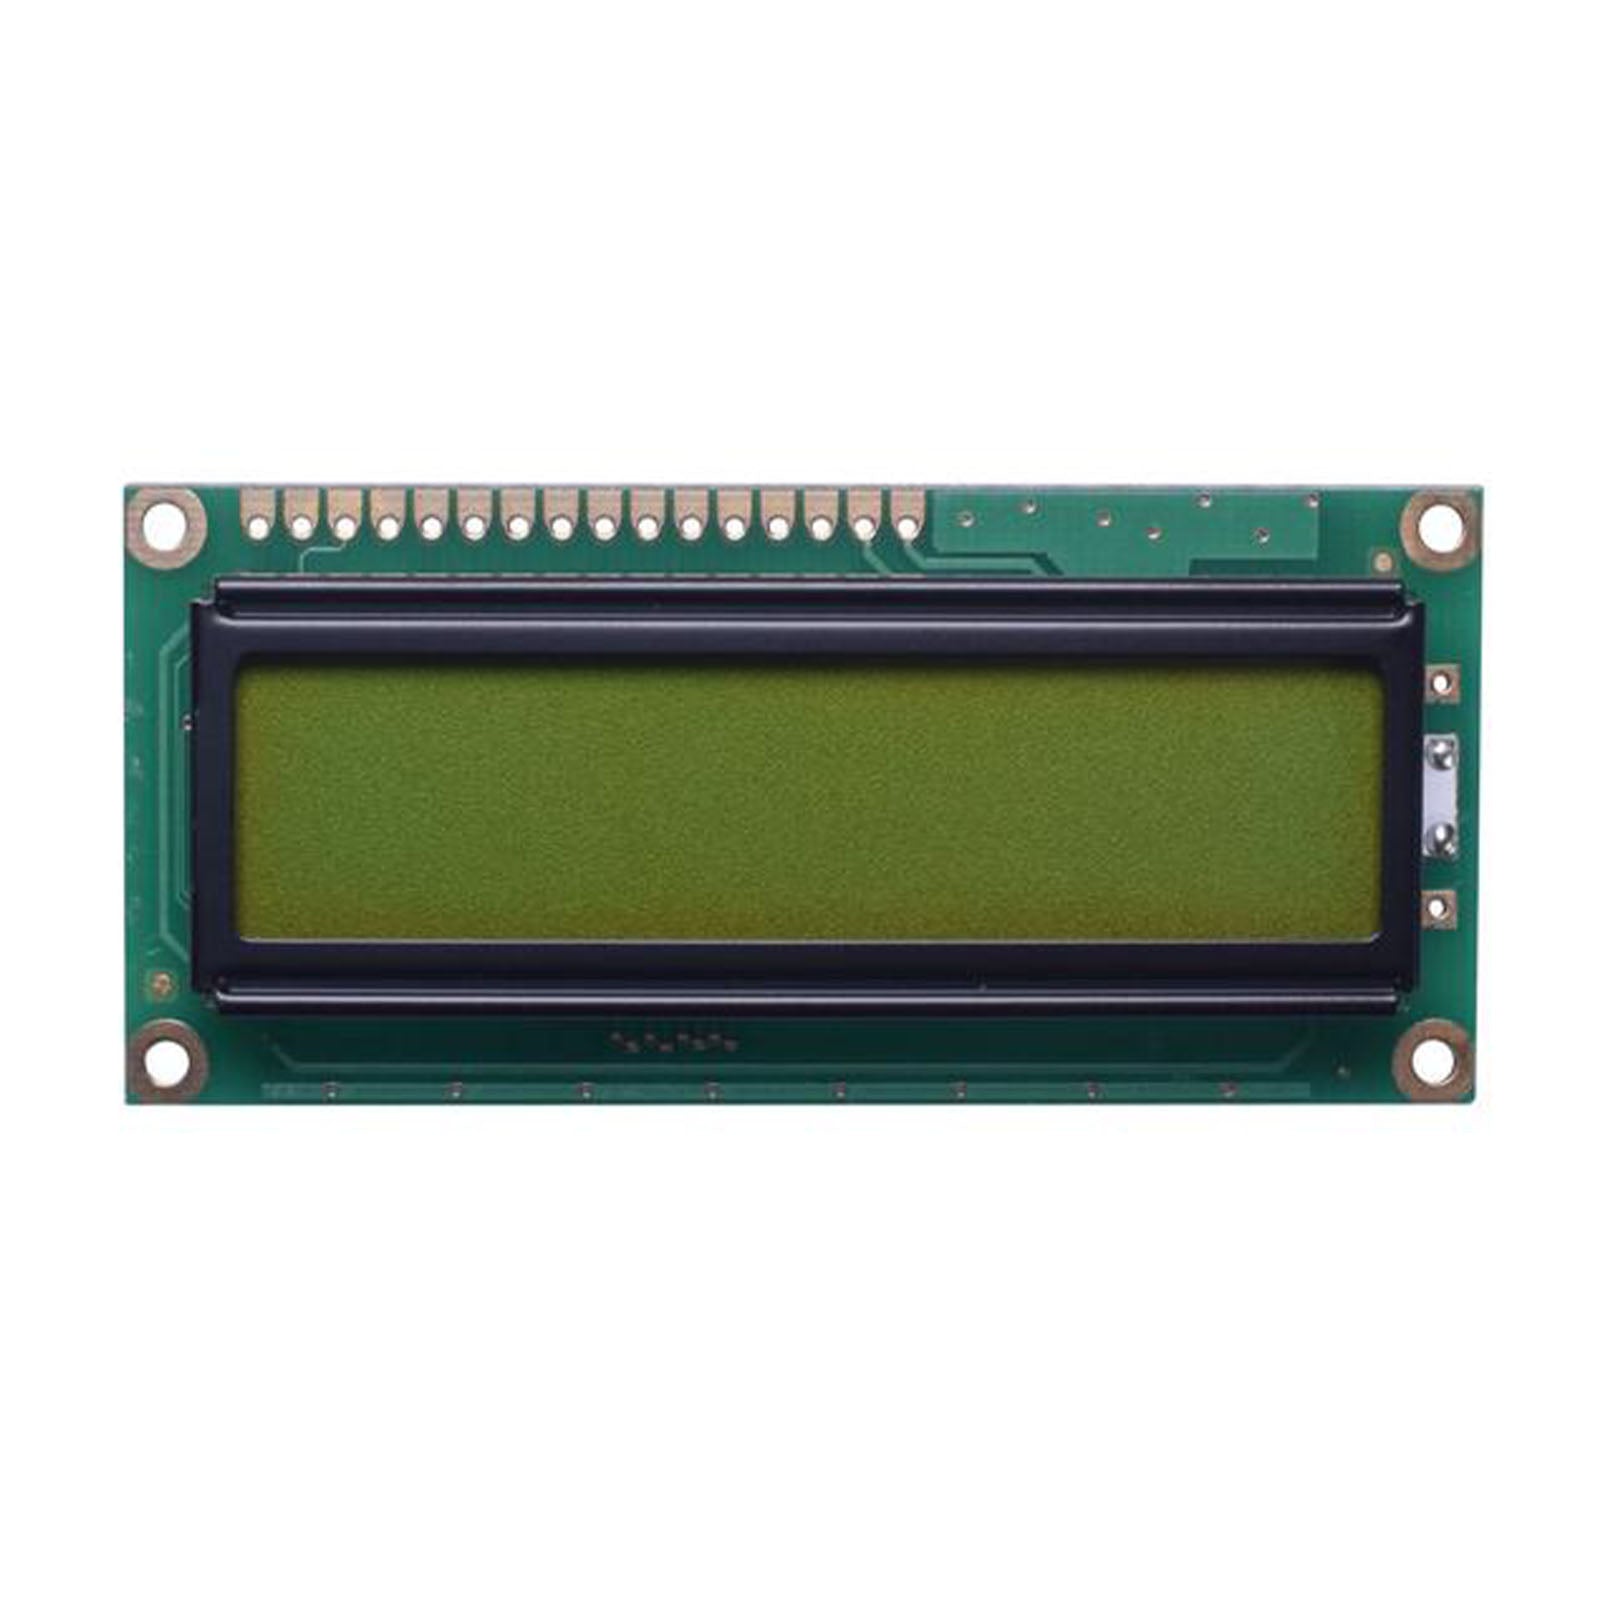 DisplayModule 16x1 Character LCD - MCU